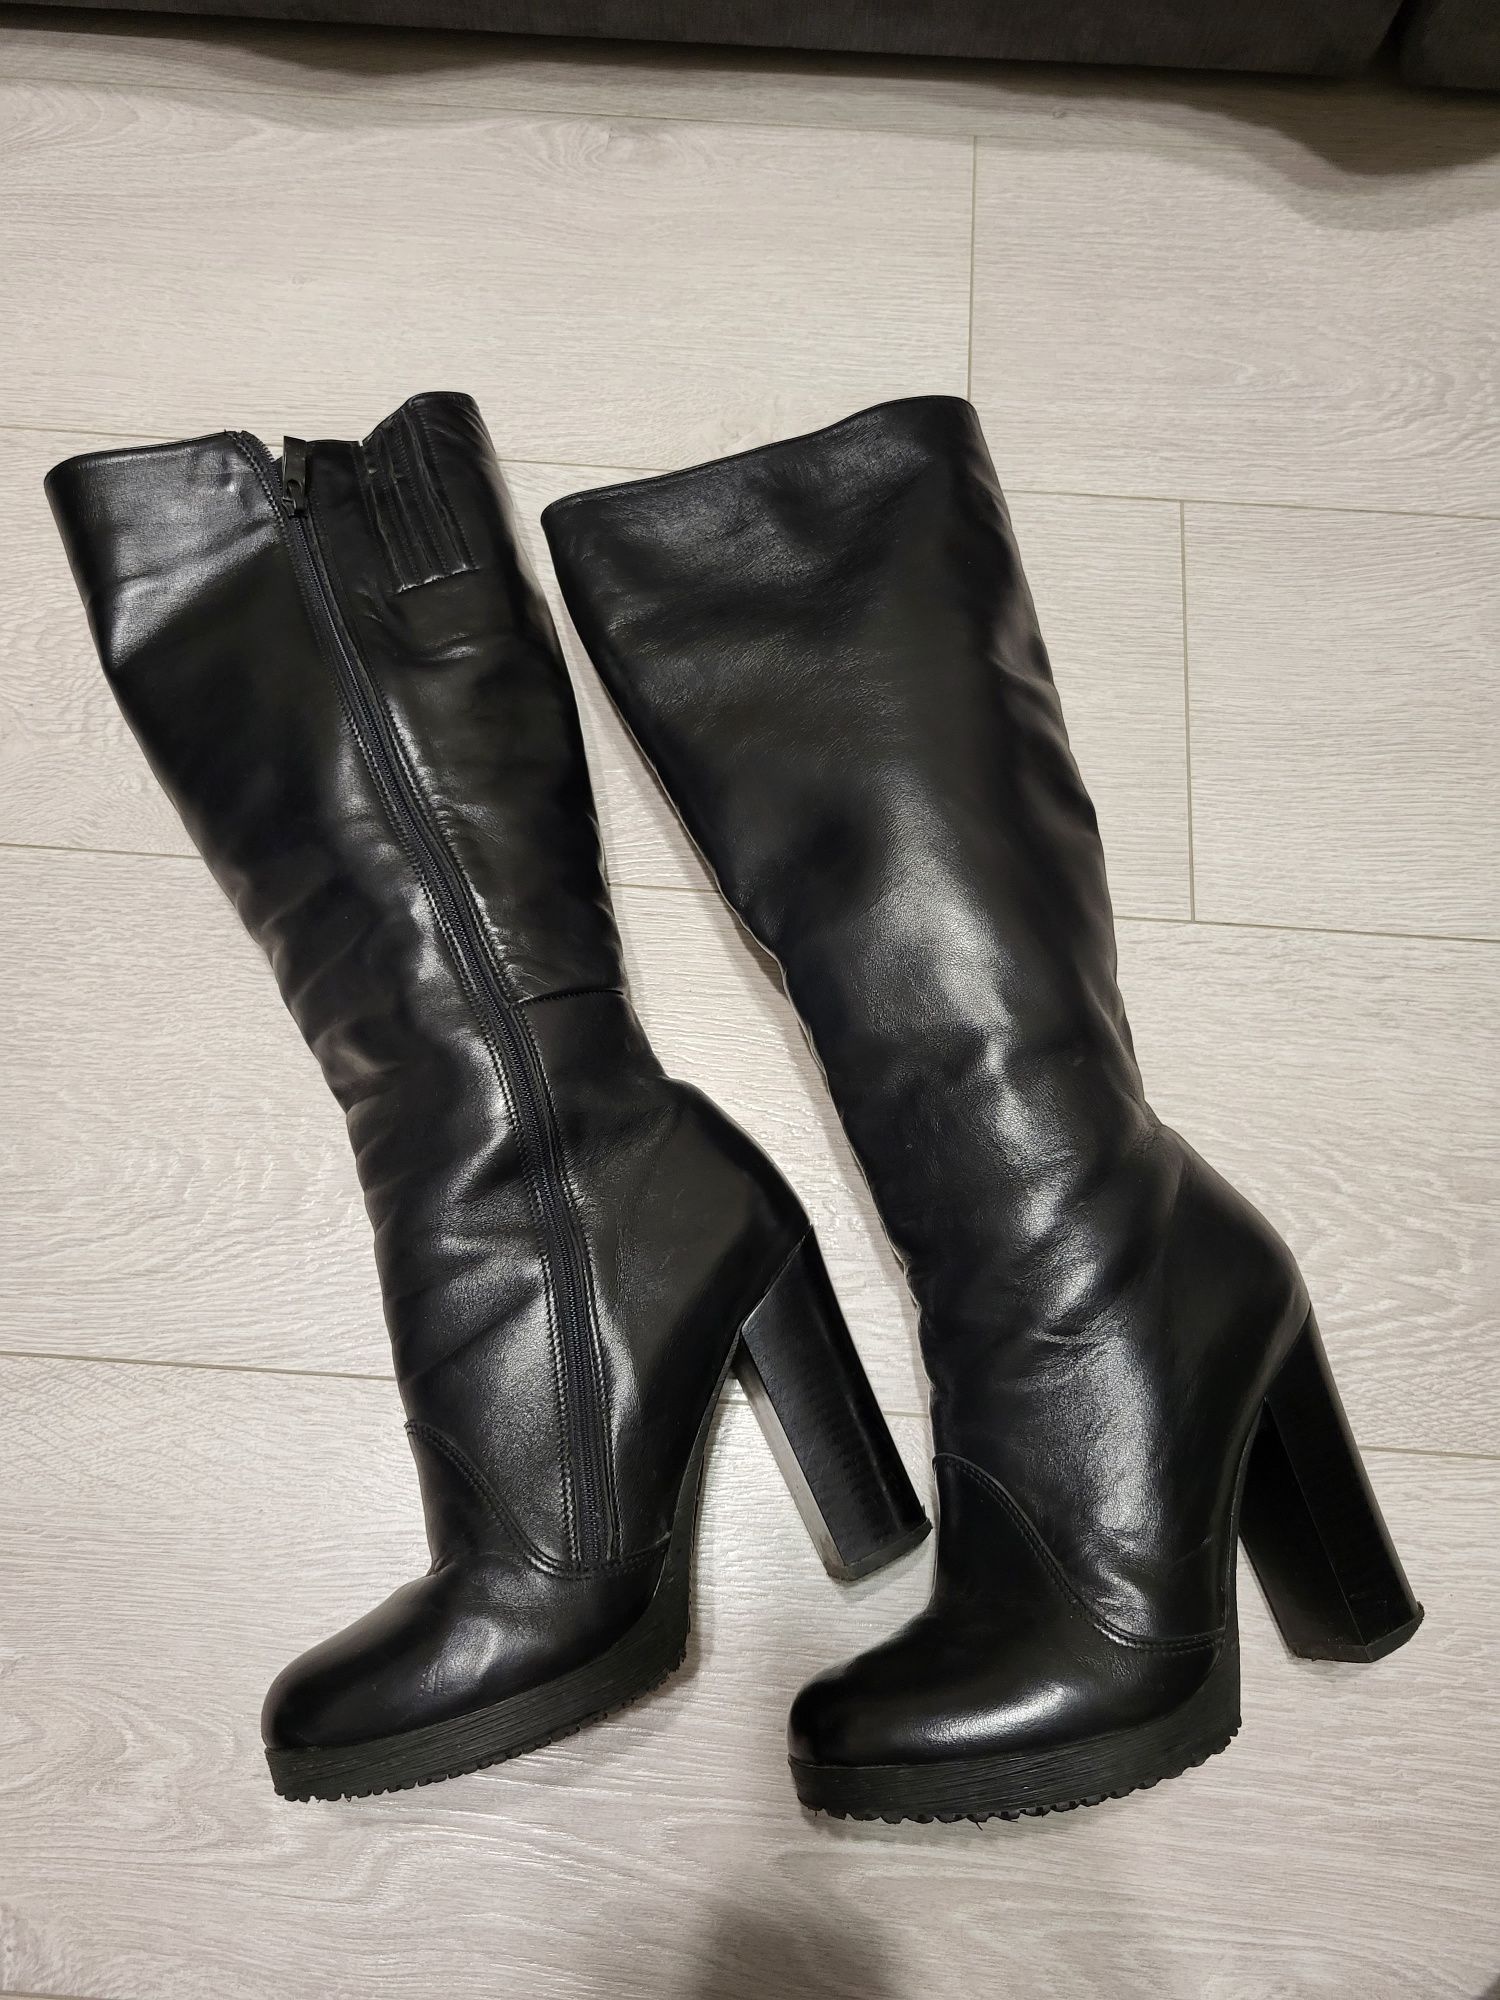 Шкіряні  зимові жіночі чоботи OLTEYA  / сапоги